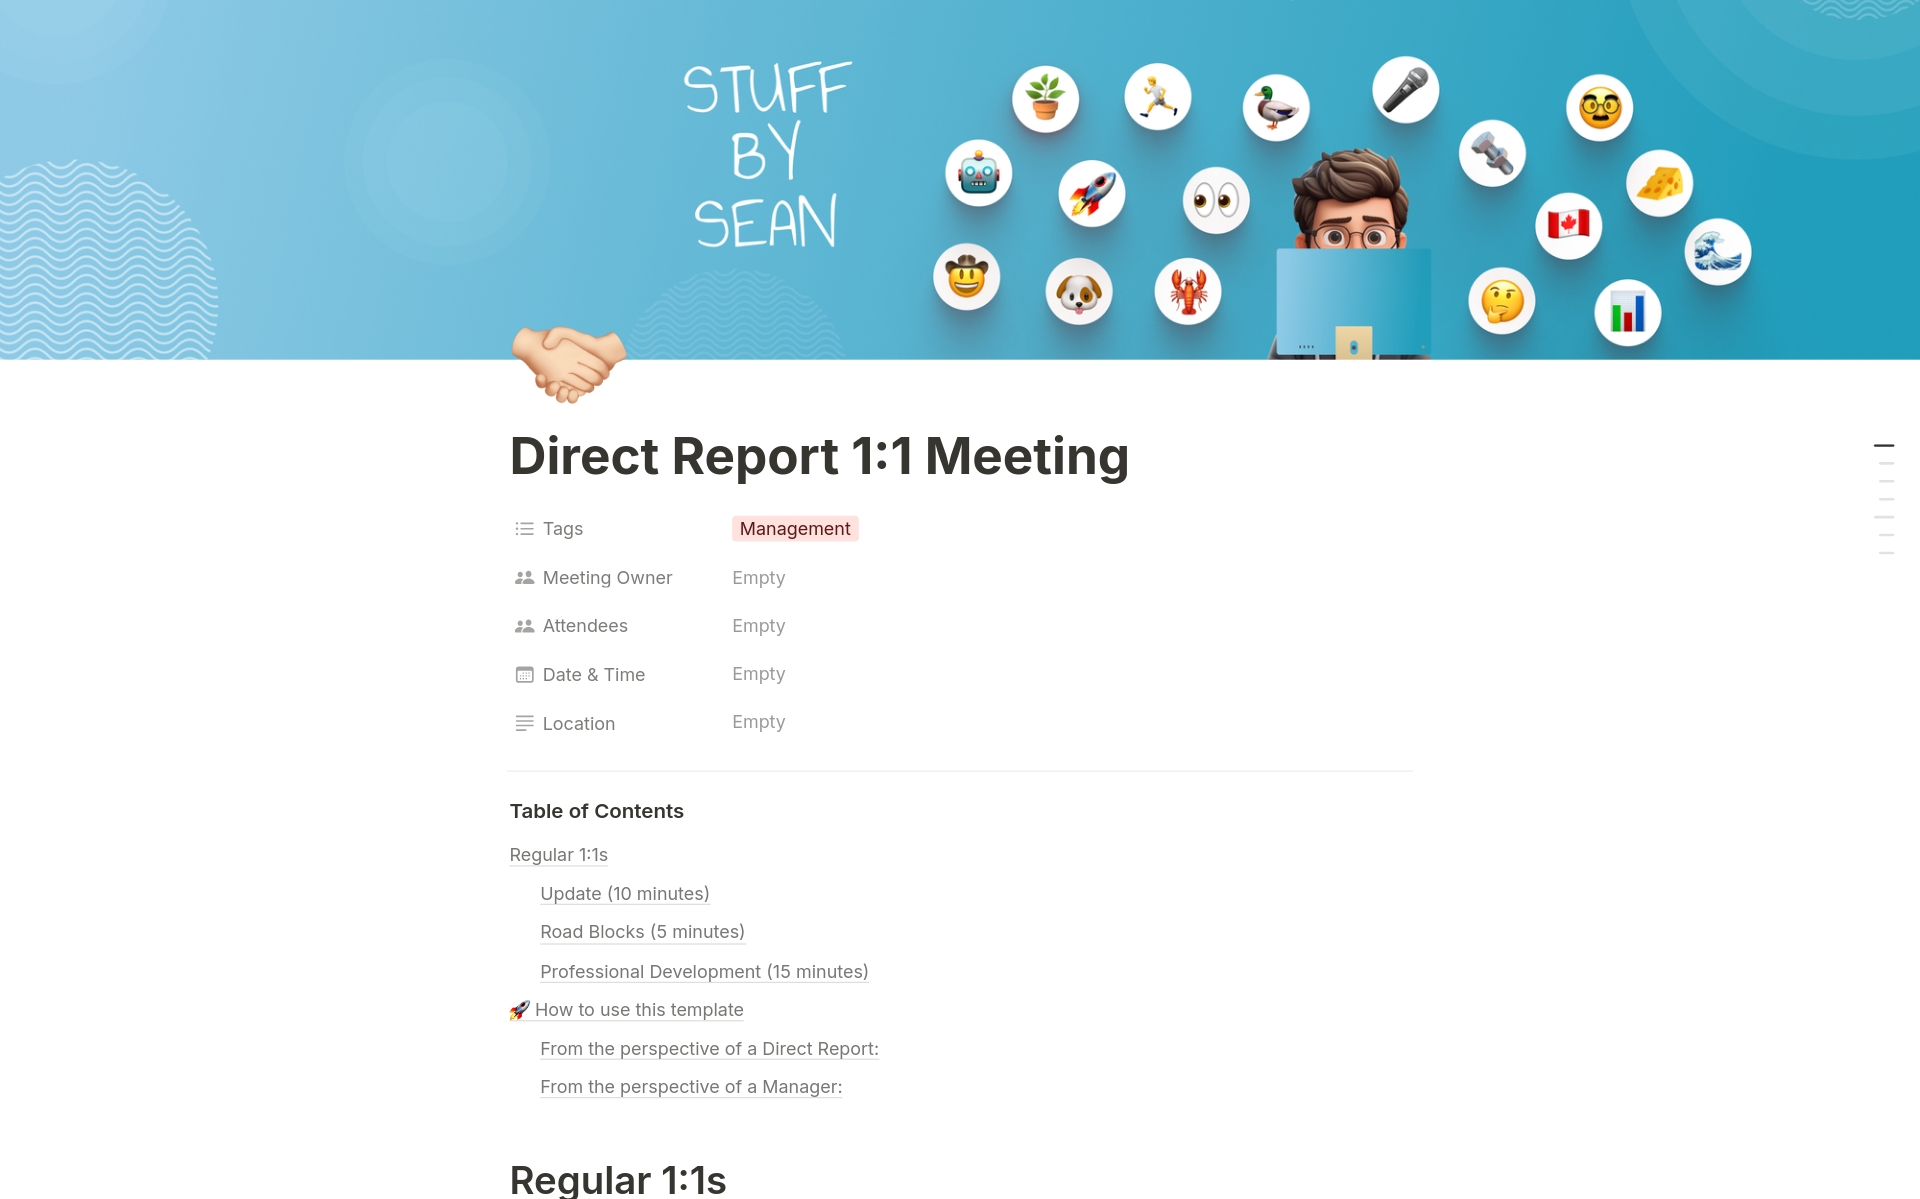 Aperçu du modèle de Direct Report 1:1 Meeting